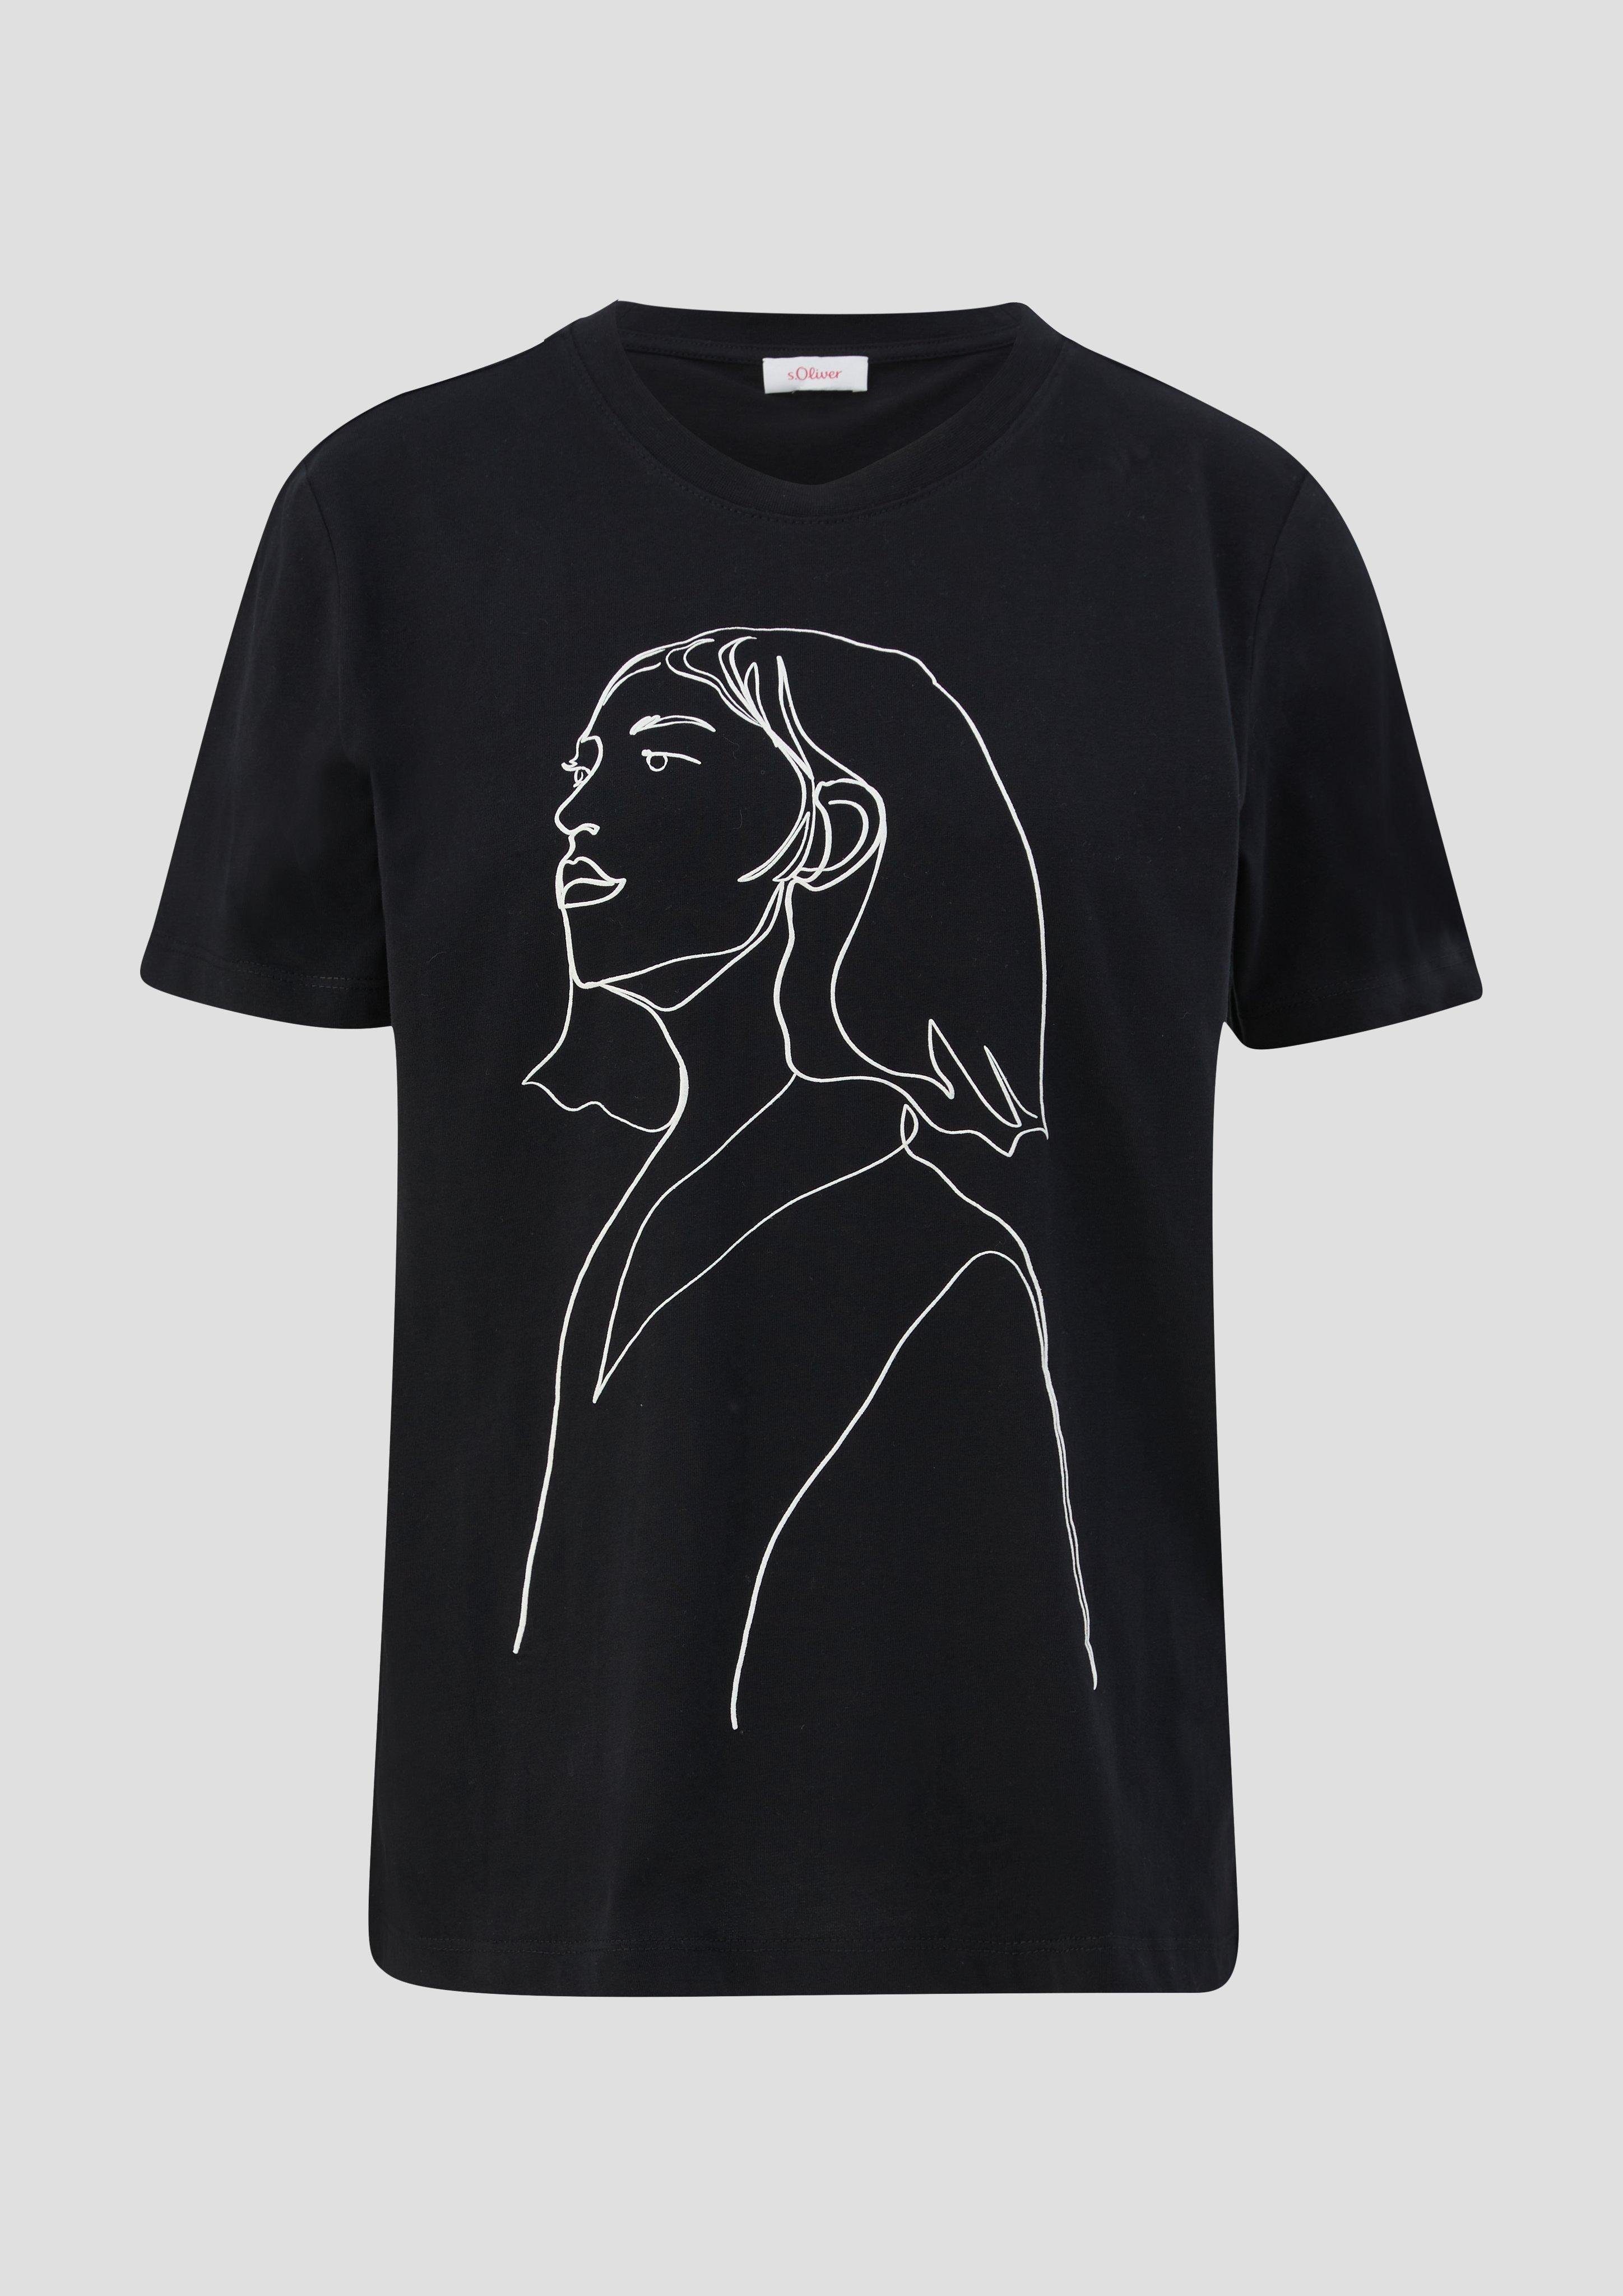 aus Kurzarmshirt Artwork, Logo T-Shirt schwarz Baumwolle s.Oliver